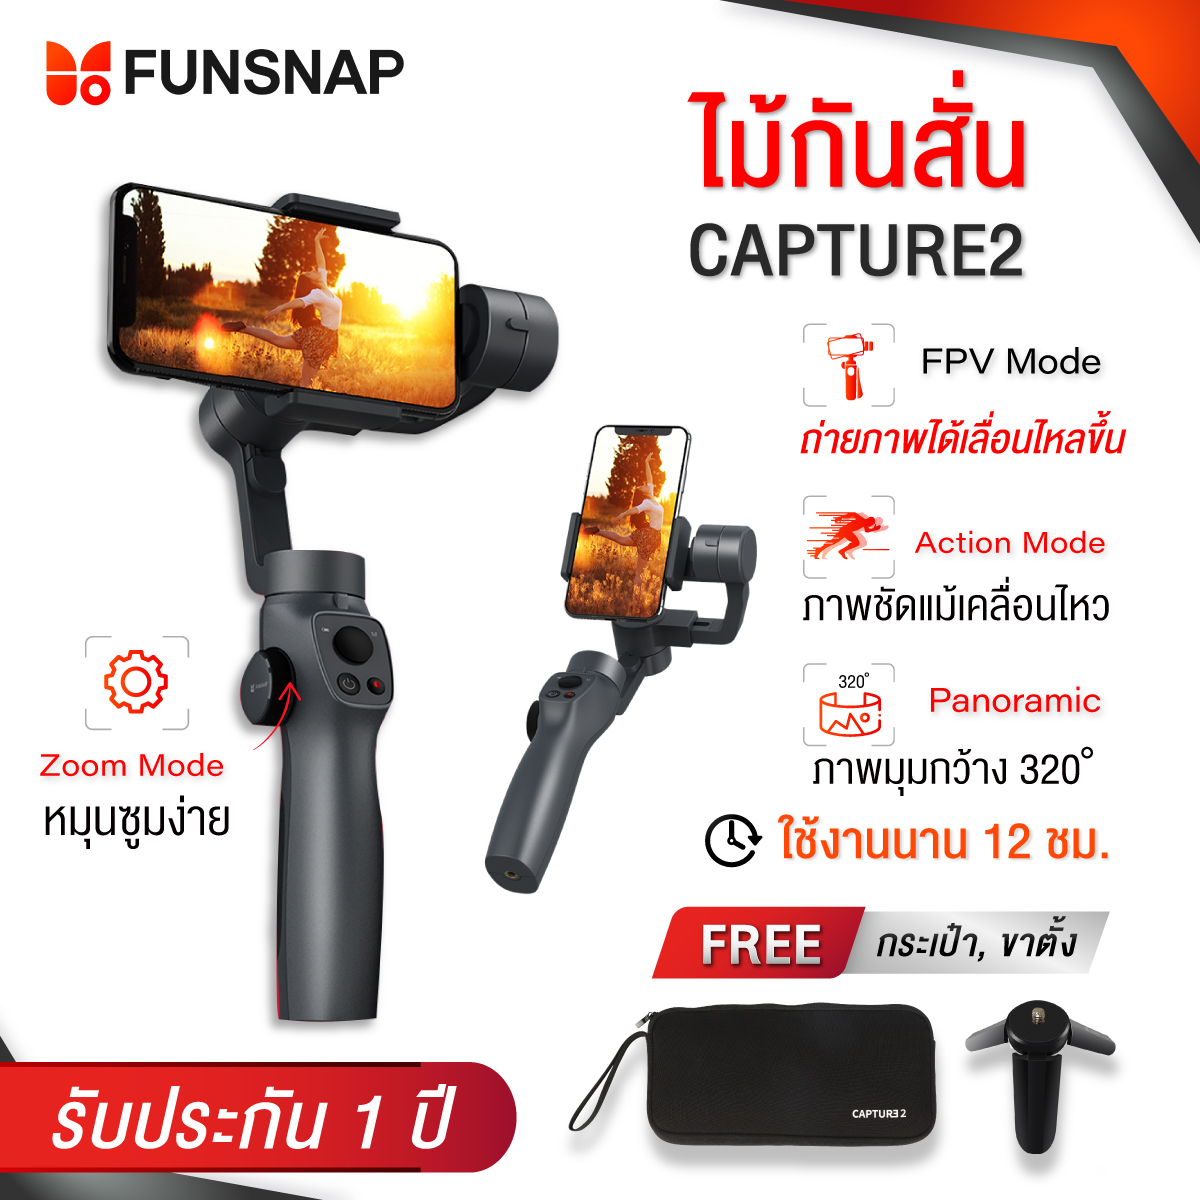 ไม้กันสั่น FUNSNAP Cap2 ไม้กันสั่น+ขา 3แกน ไม้กันสั่นมือถือสมาร์ทโฟน พกพาง่าย ใหม่ล่าสุด กิมบอล FPV หมุนกล้องได้ 320องศา ถ่ายรูป เซลฟี่ อัดวิดีโ